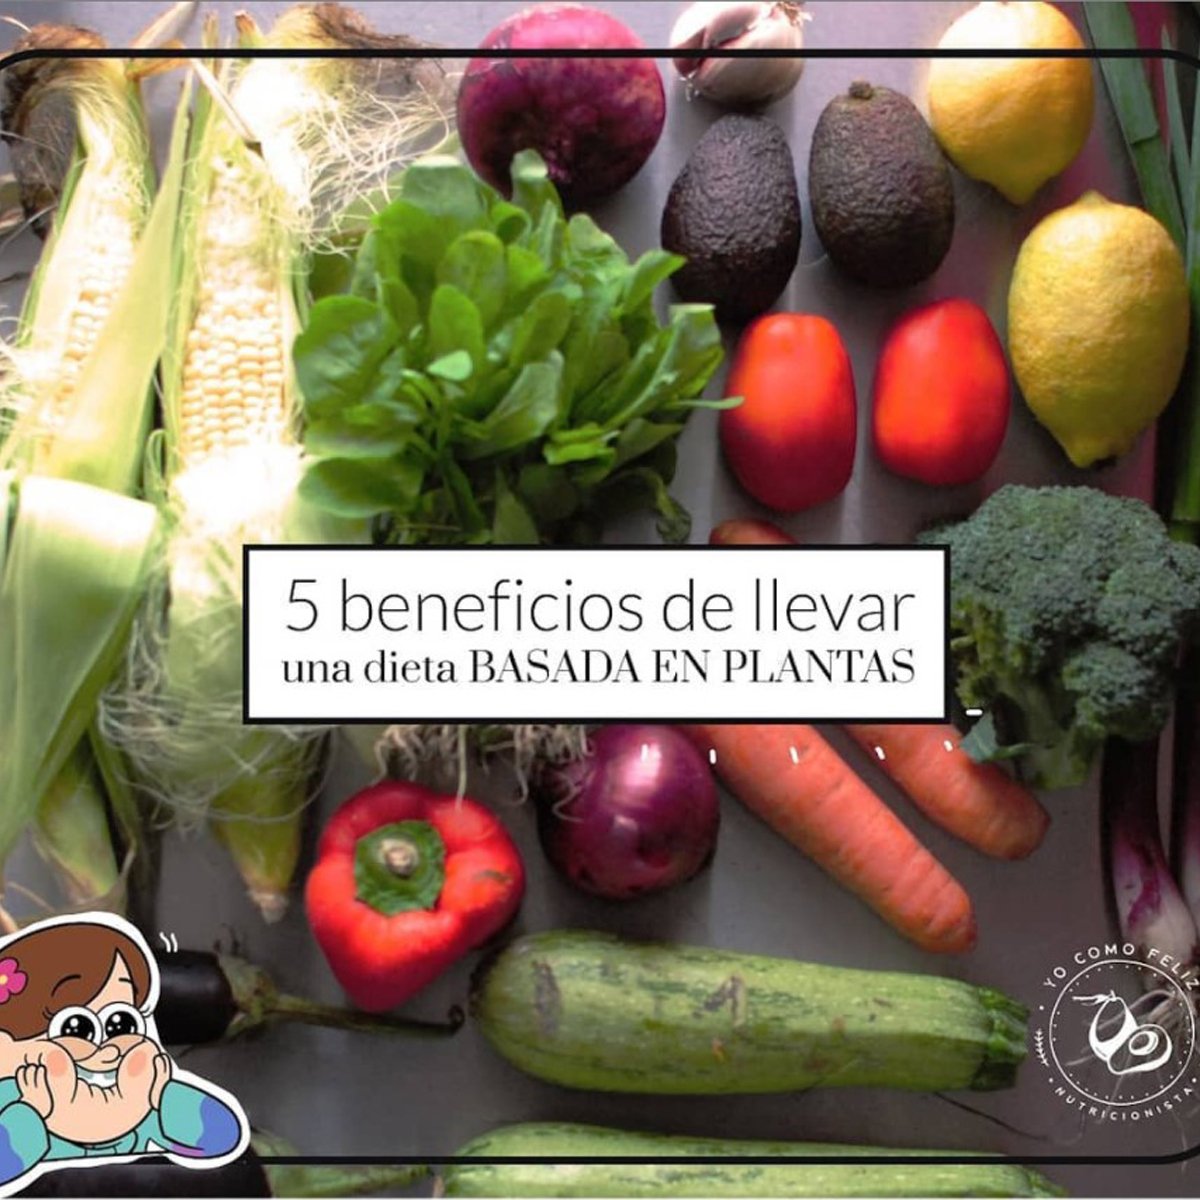 5 Beneficios De Llevar Una Dieta Basada En Plantas Yocomofeliz 7754